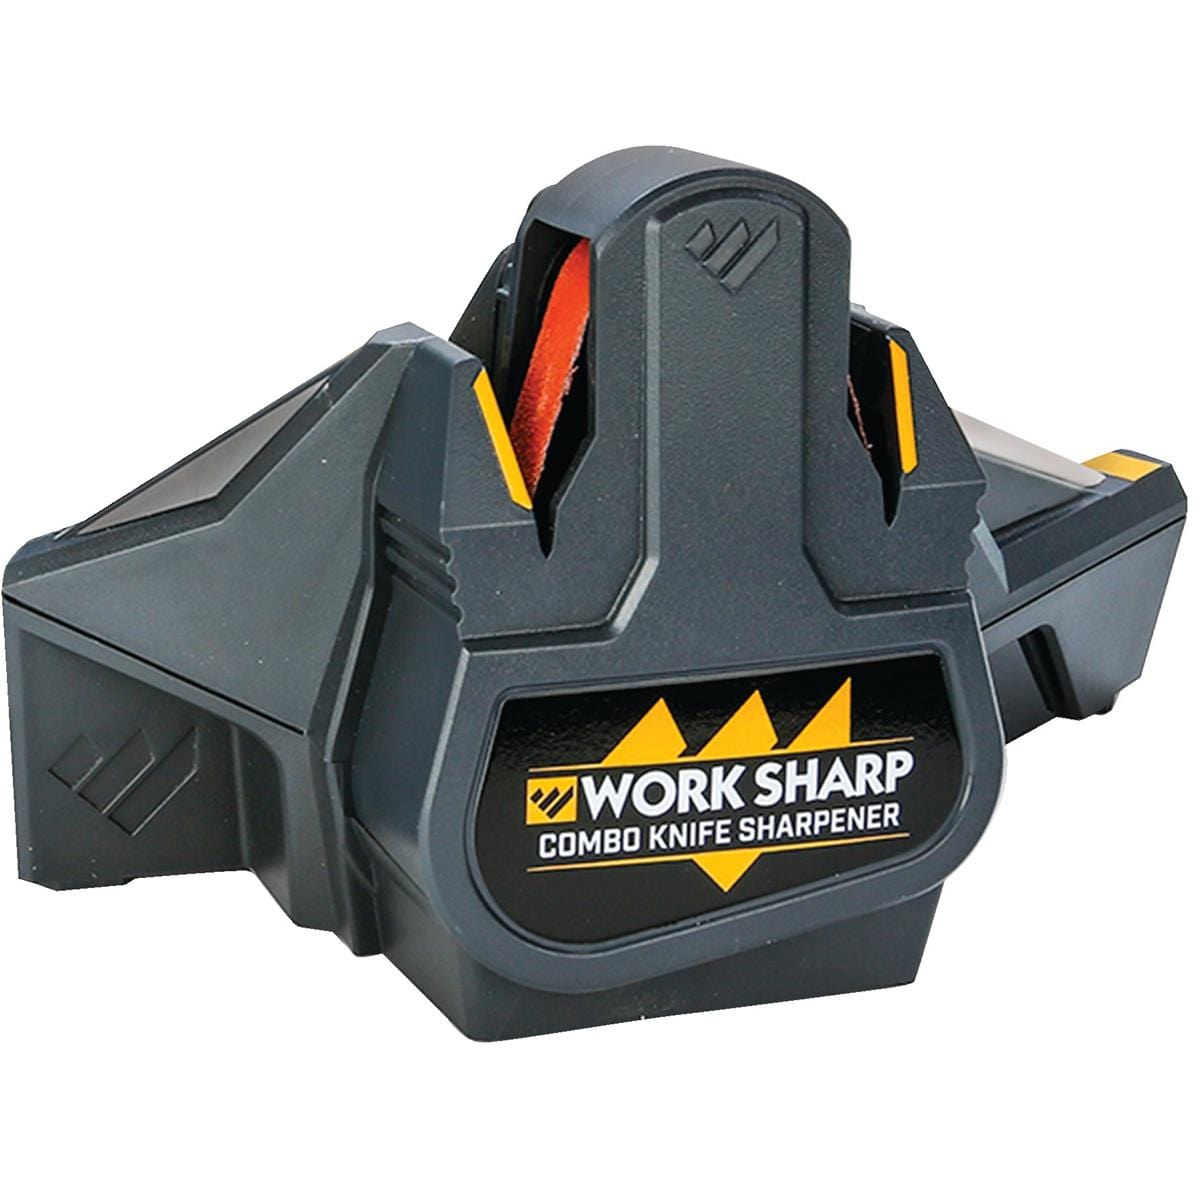 Work Sharp's New Combo Knife Sharpener